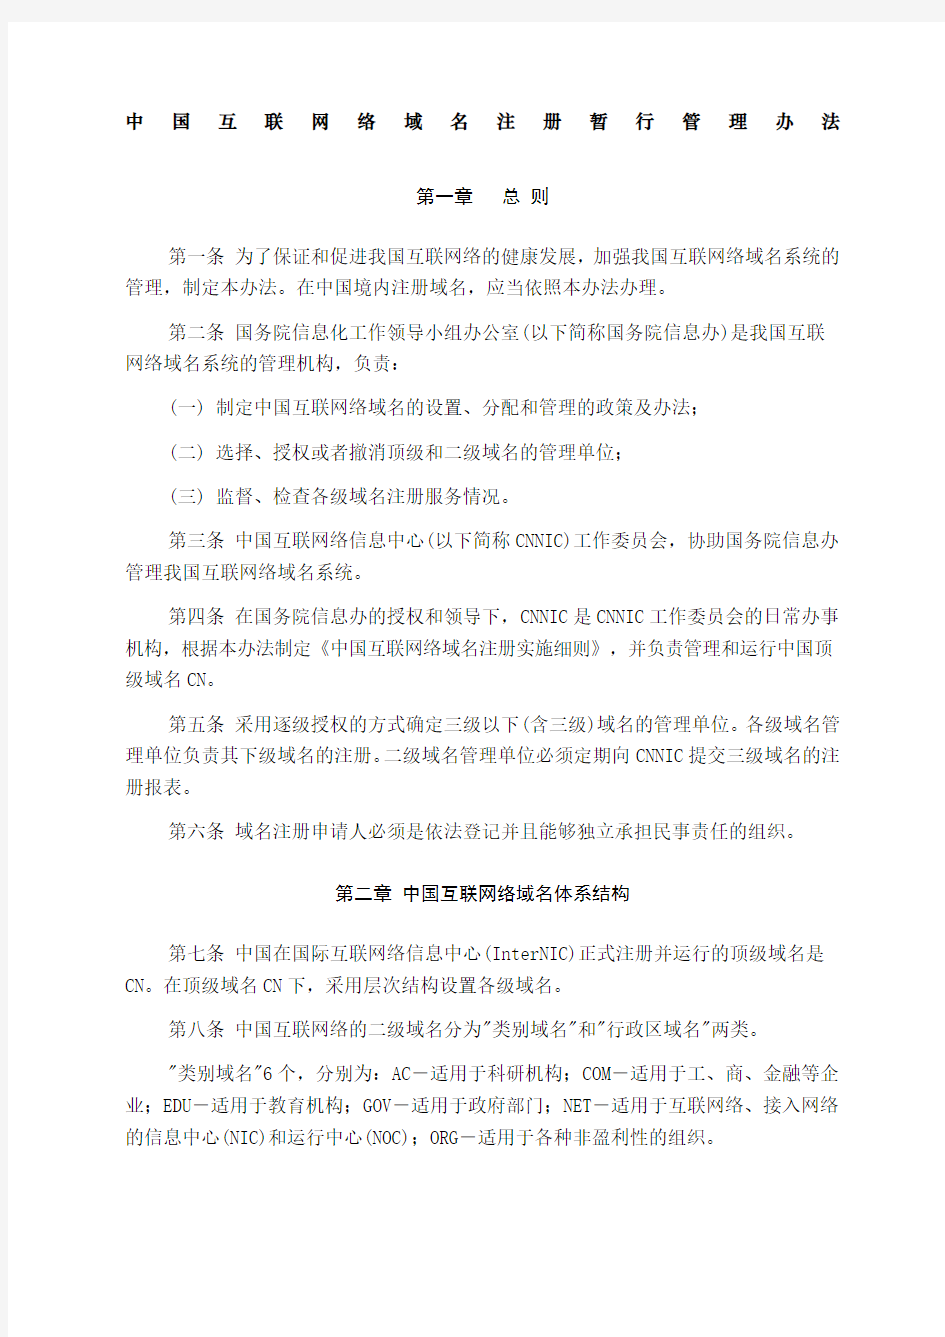 中国互联网络域名注册暂行管理办法